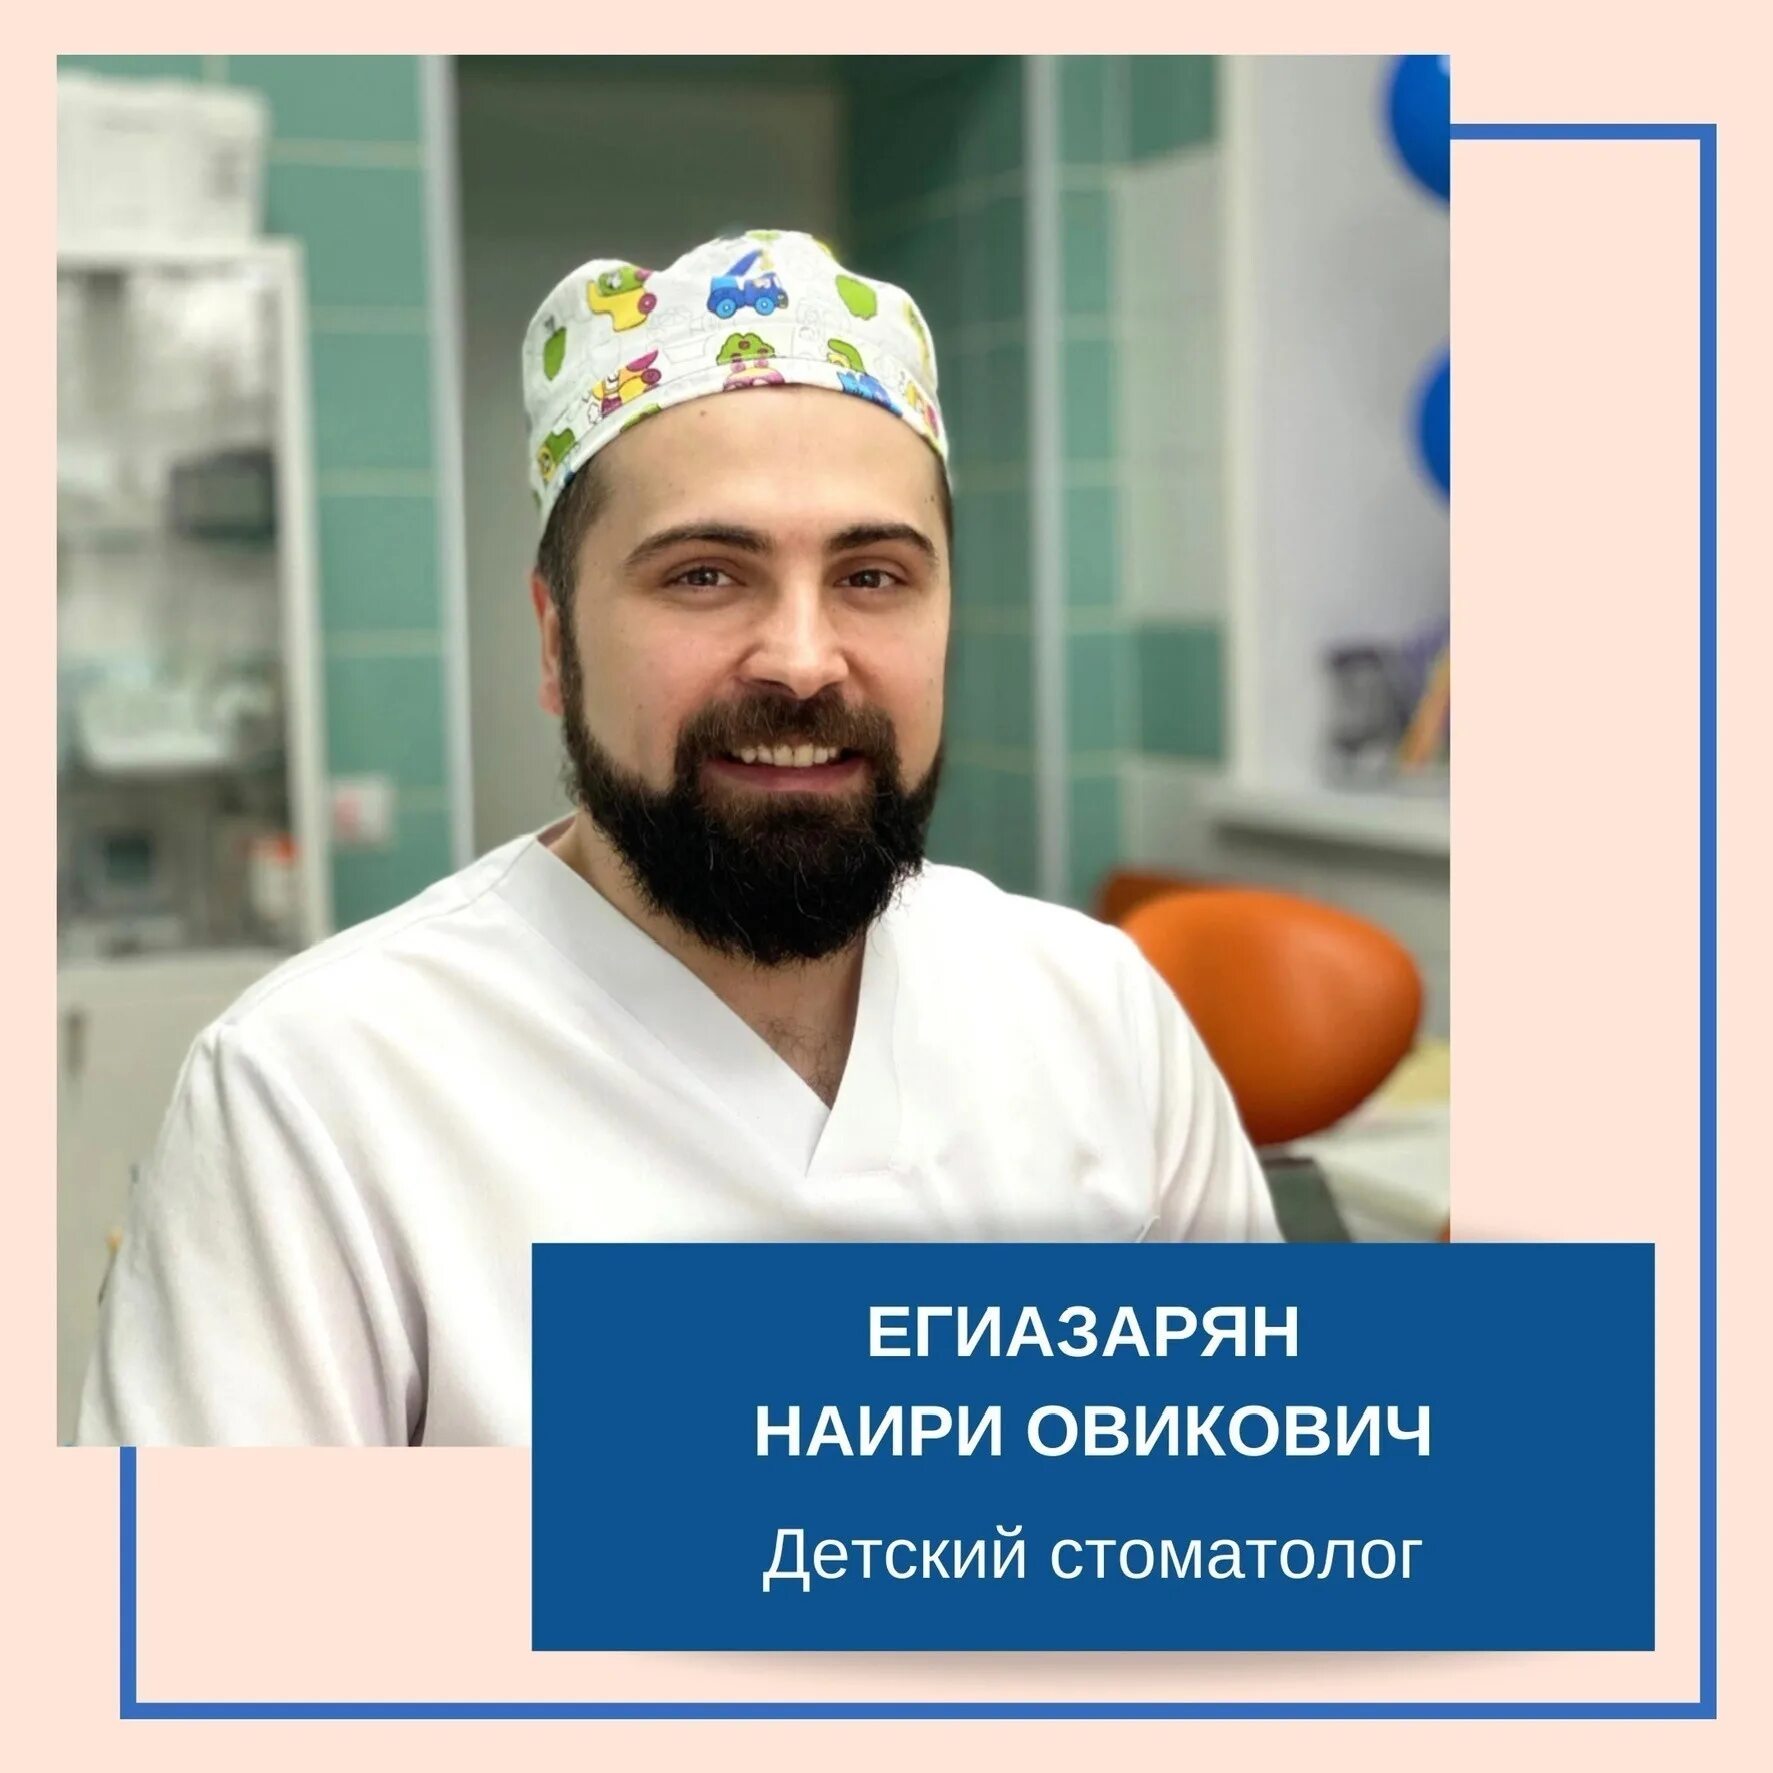 Егиазарян Наири Овикович стоматолог. Егиазарян стоматолог Мурманск.